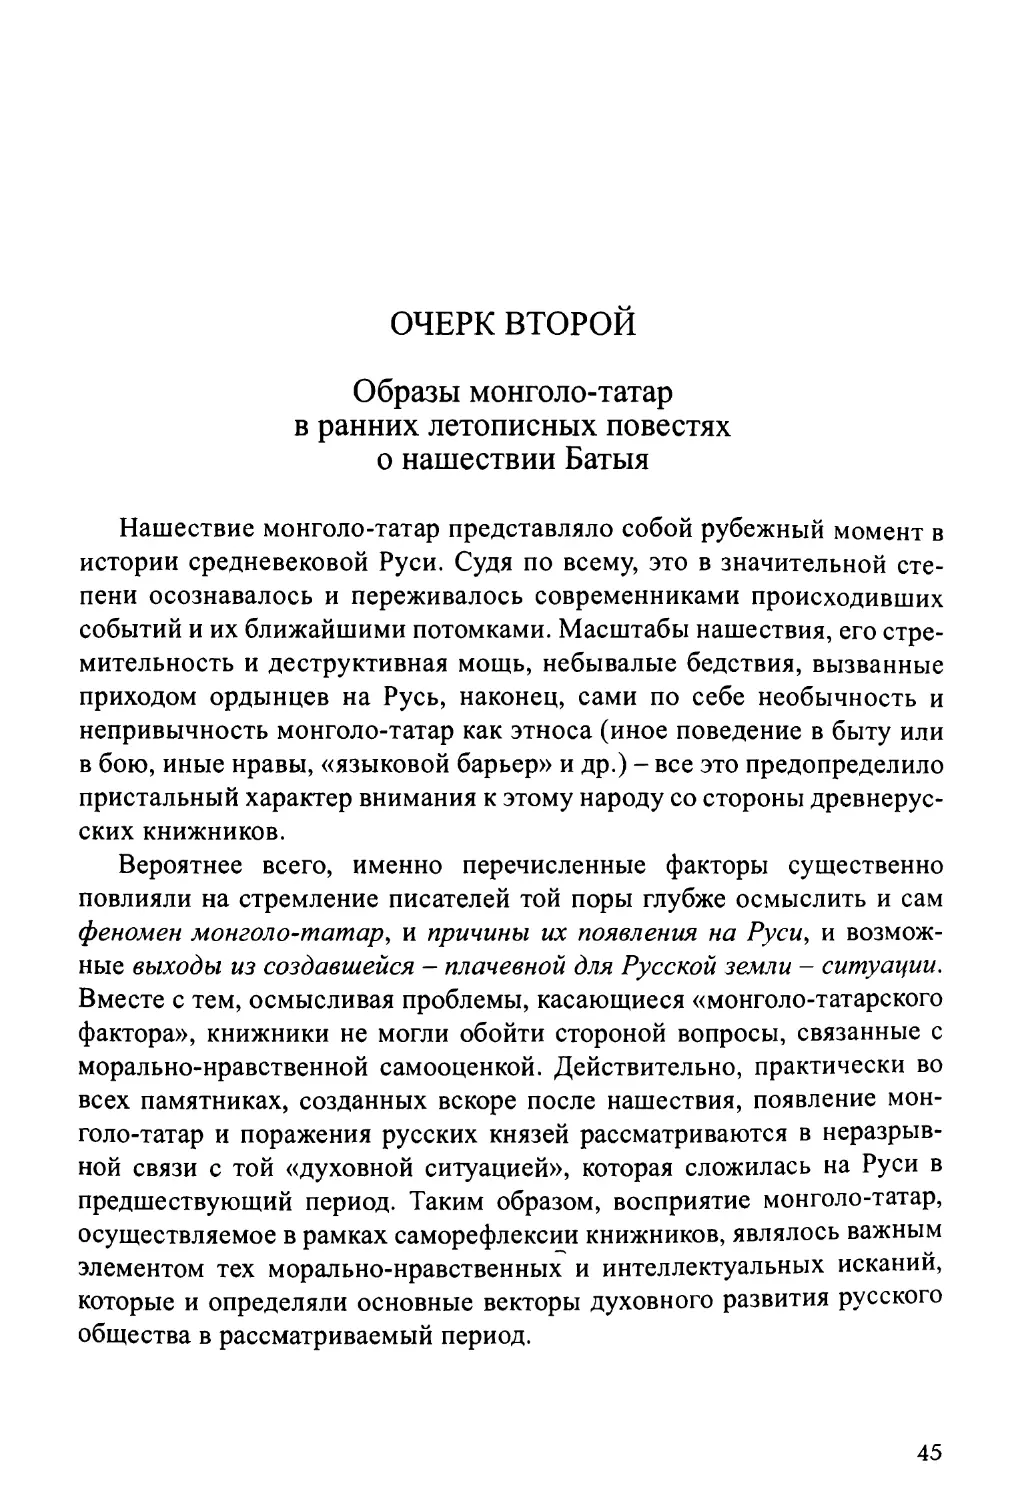 Очерк второй. Образ монголо-татар в ранних летописных повестях о нашествии Батыя